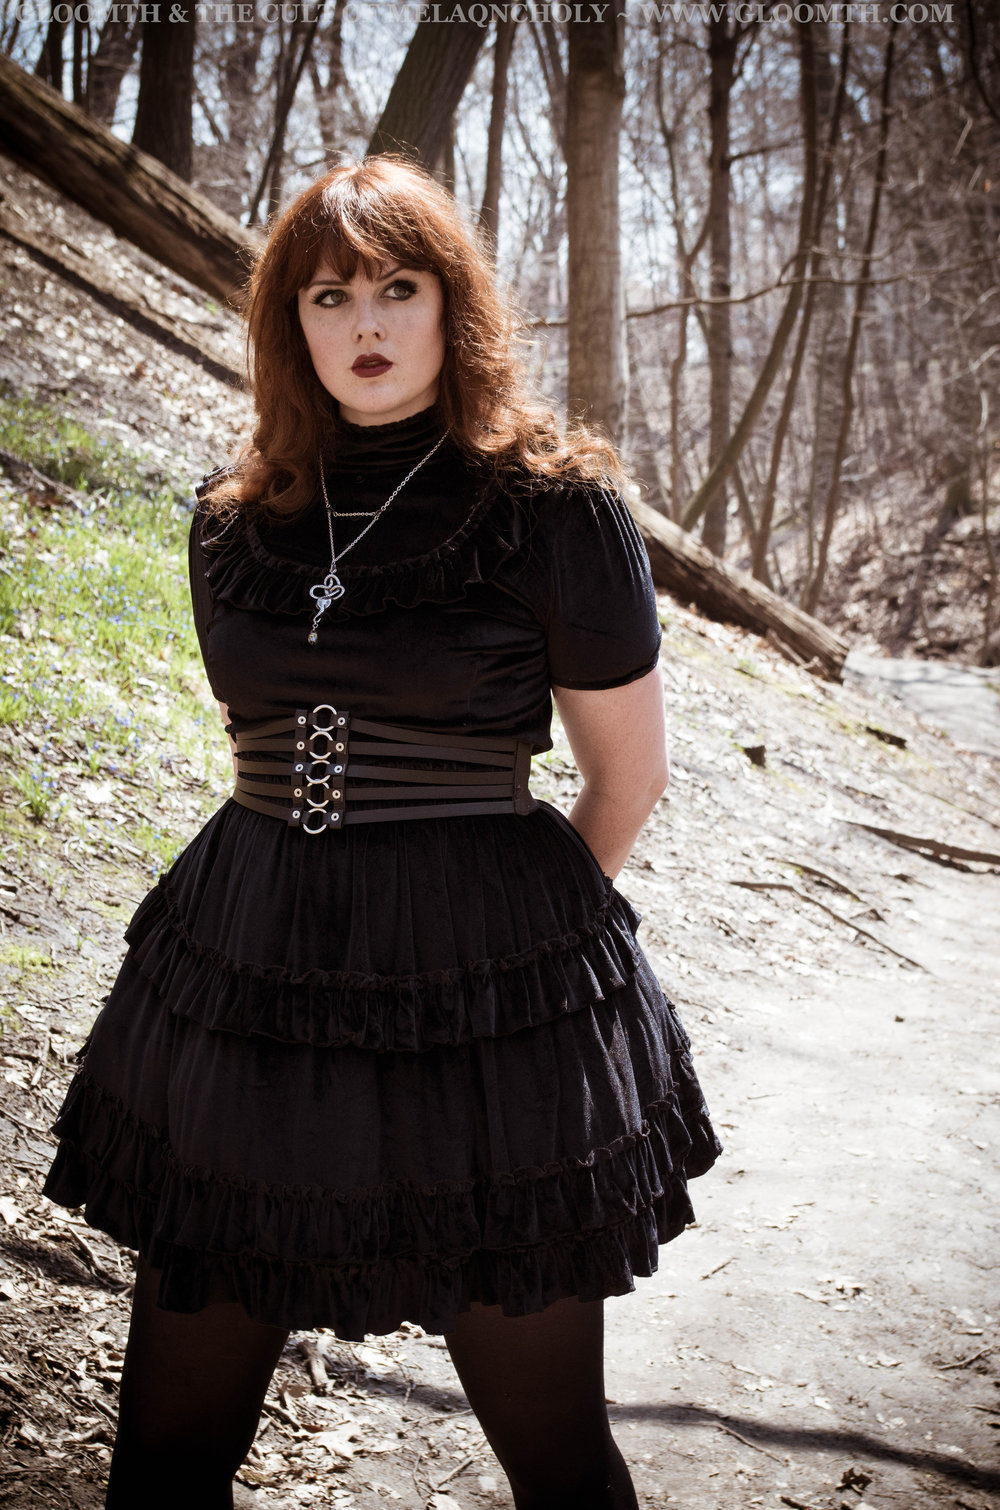 Tempel Seletøj besværlige October Black Velvet Gothic Lolita Dress — Gloomth